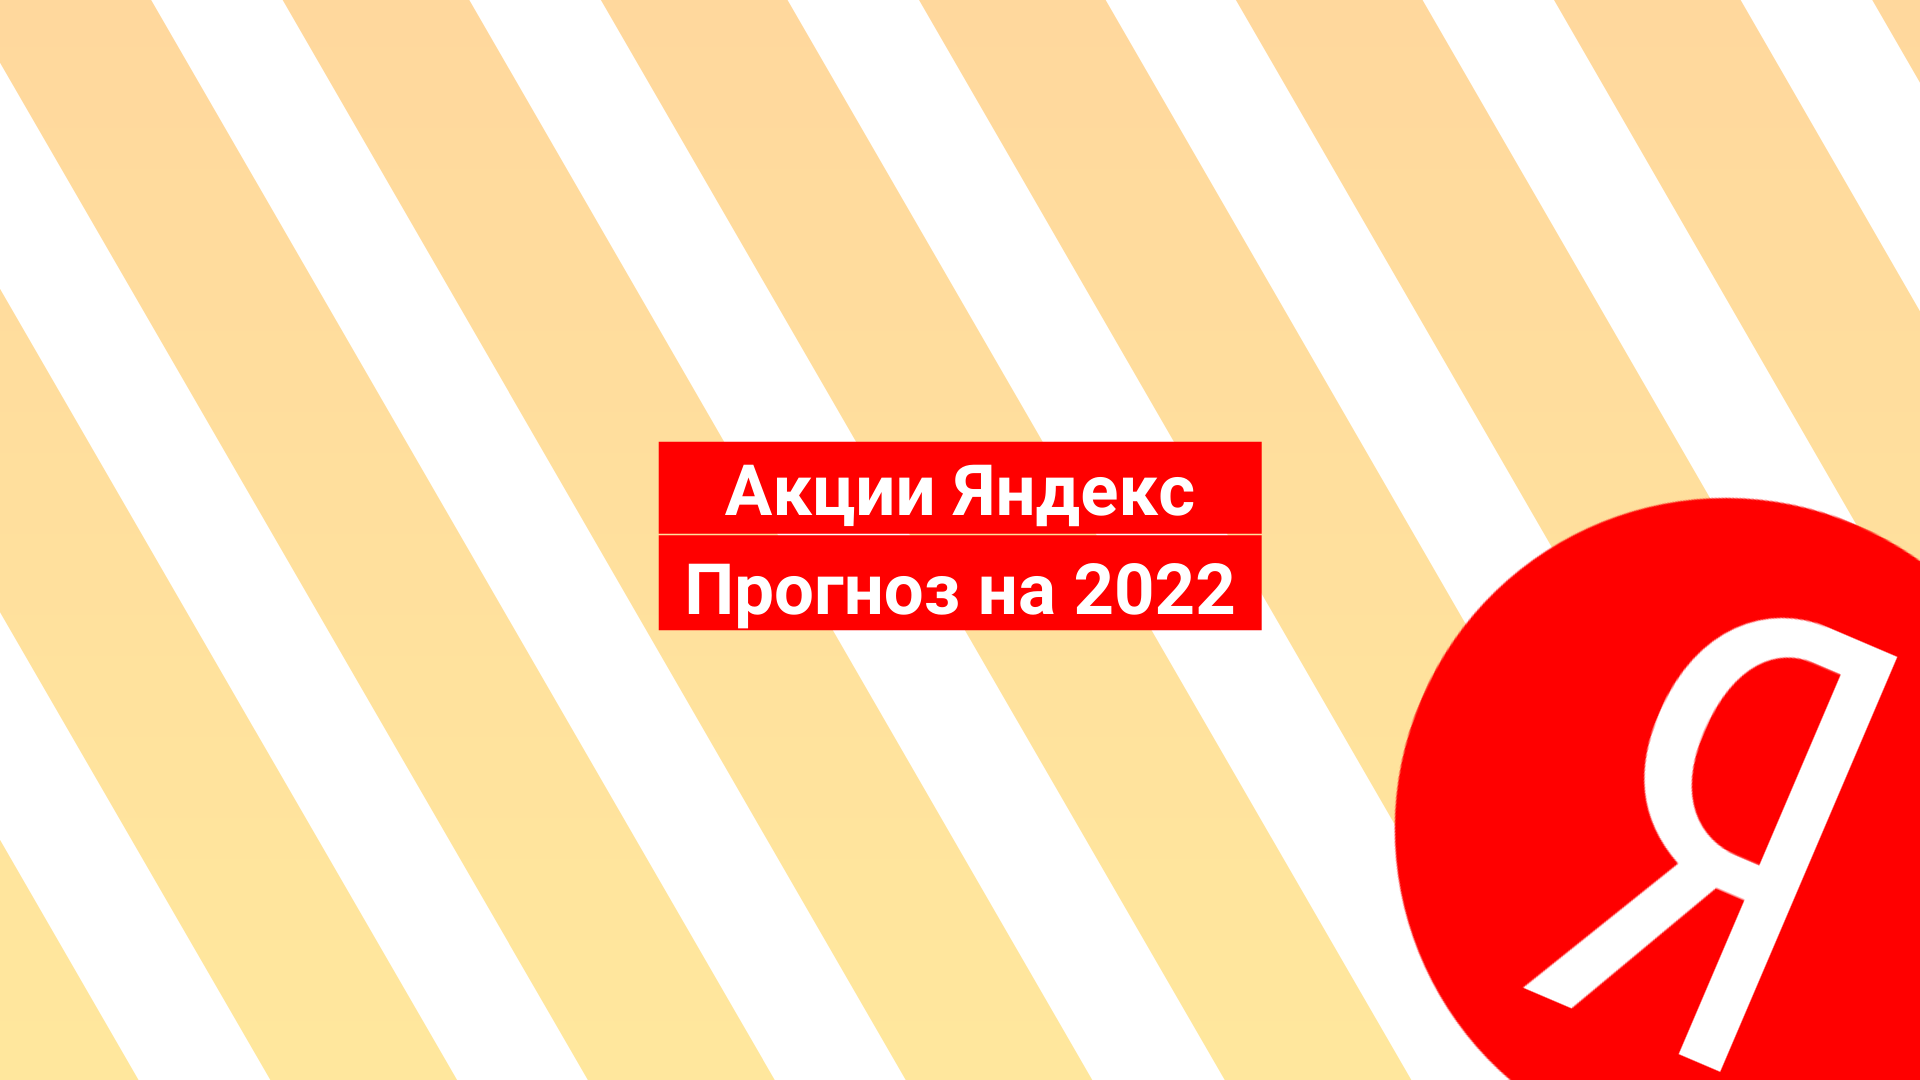 05.07.2022 Акции Яндекс: прогноз на 2022 и мнения аналитиков